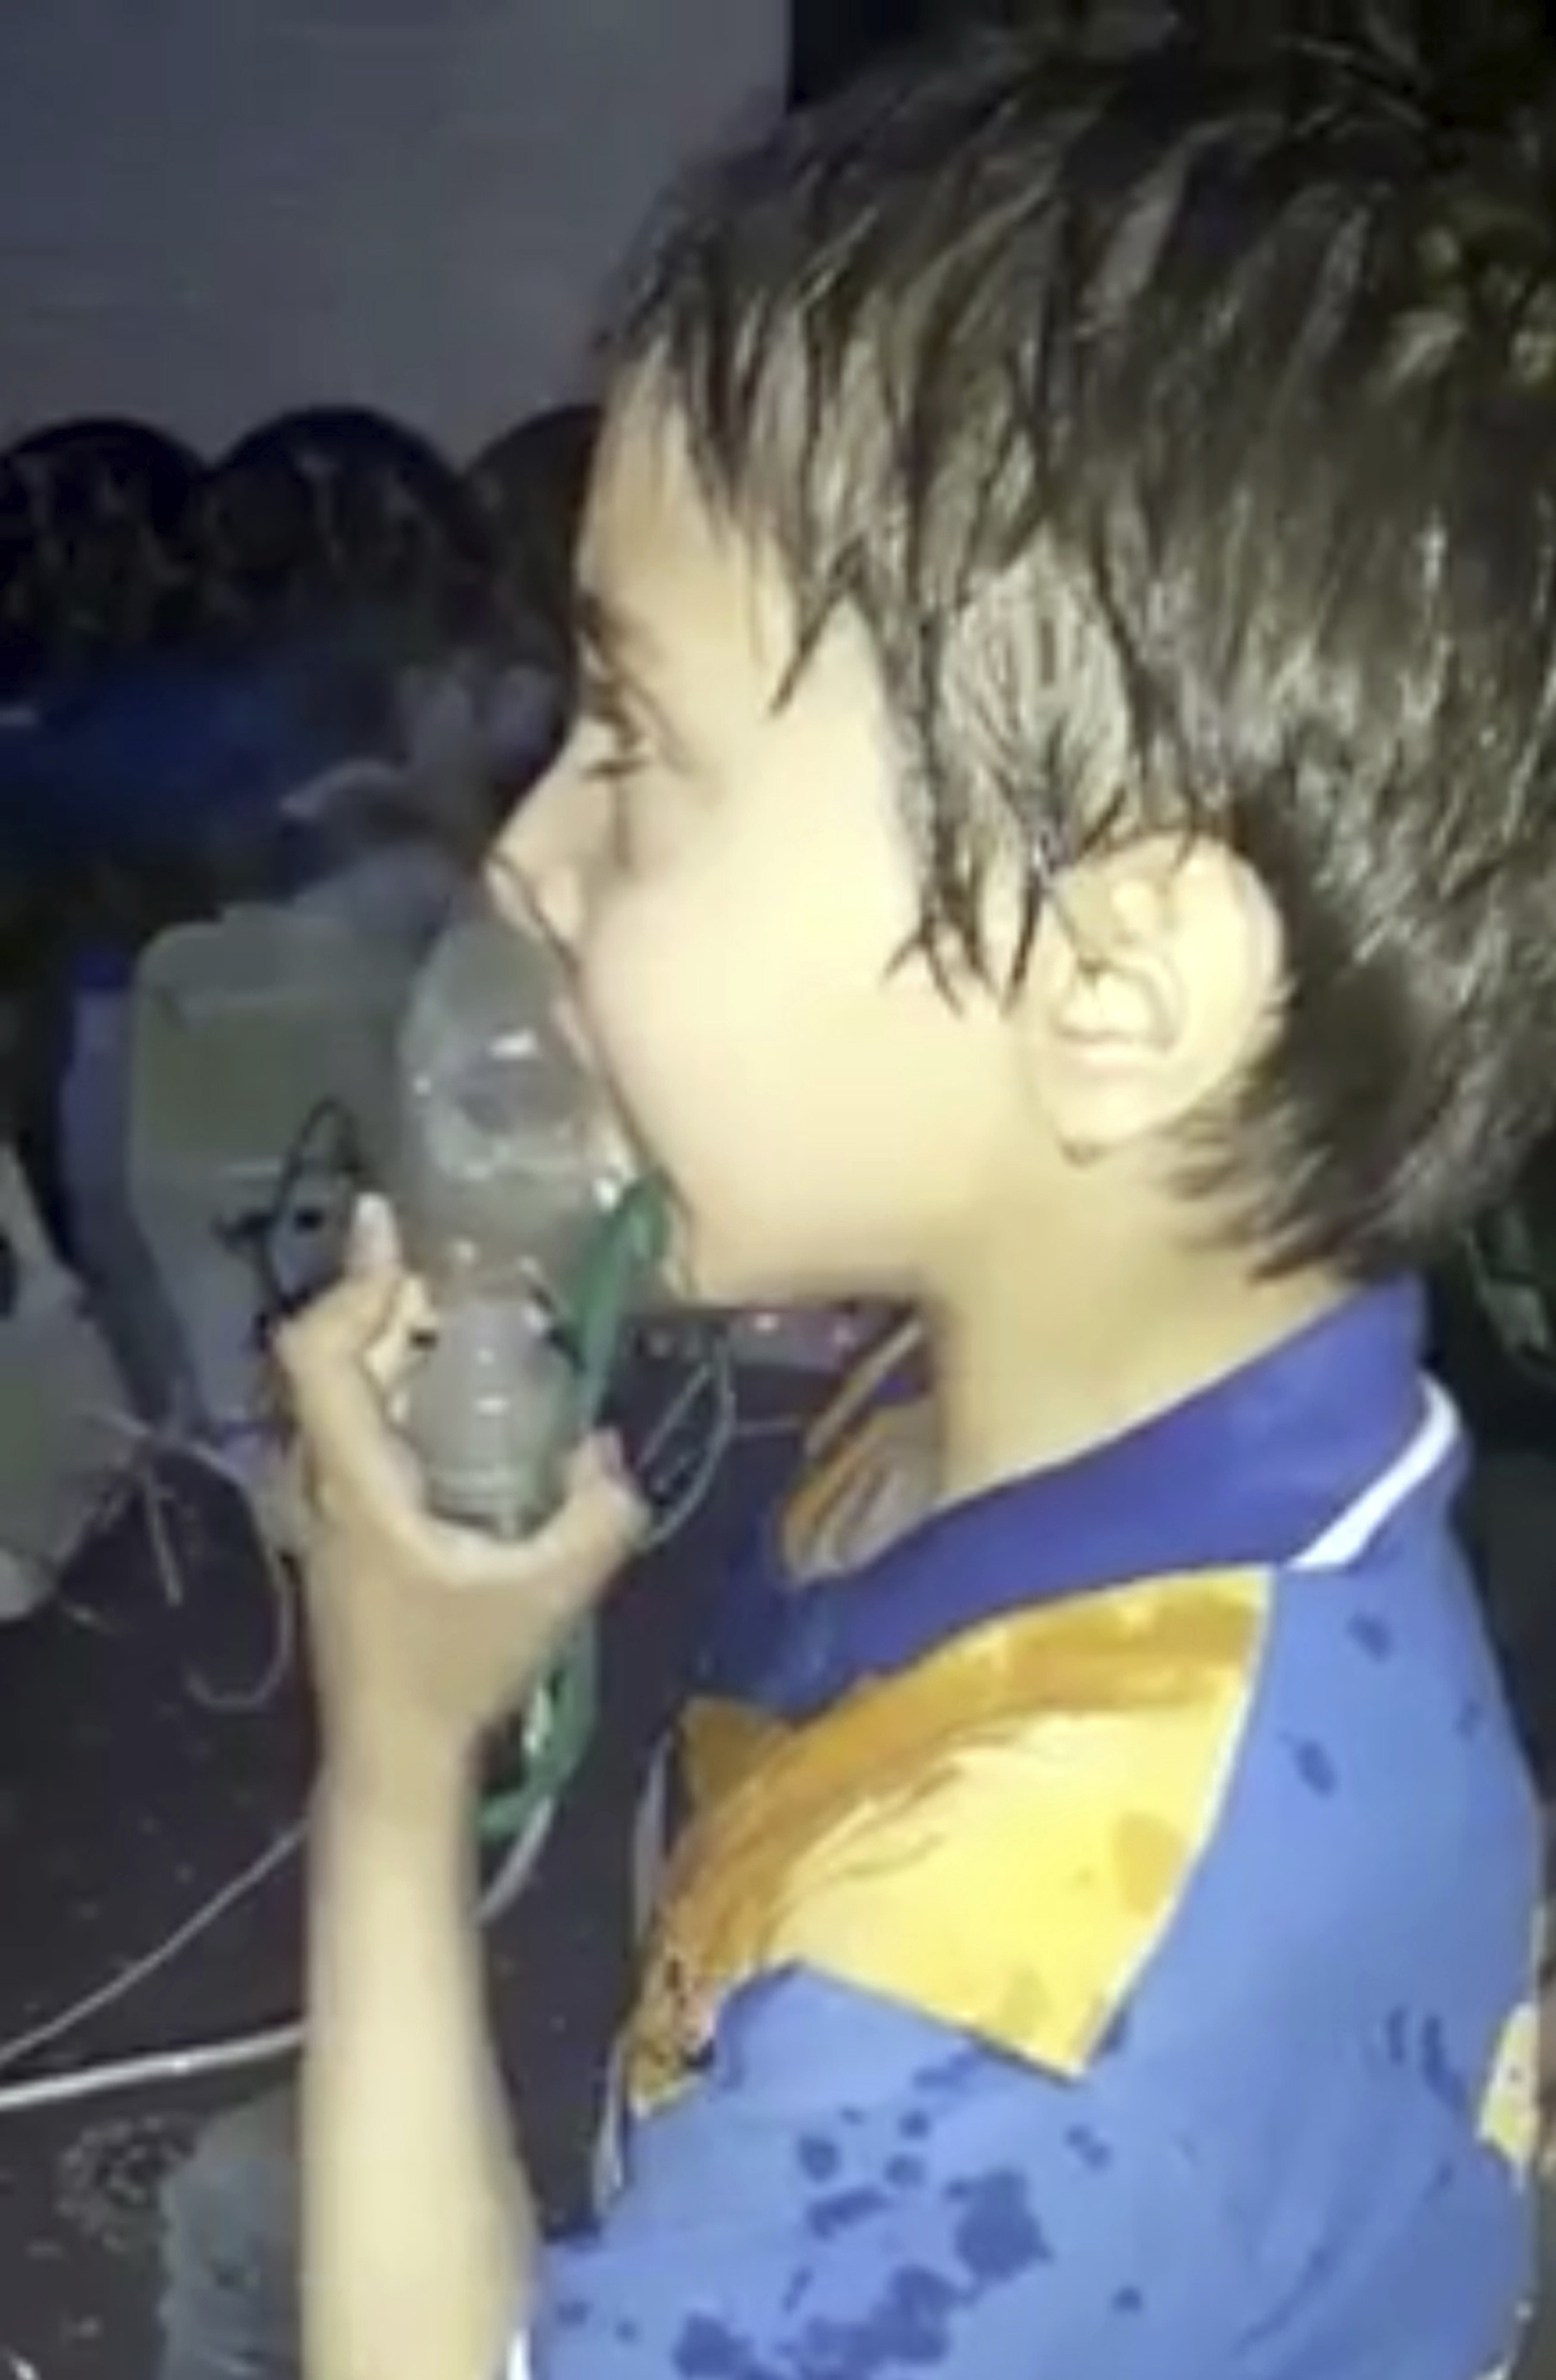 СЗО: 500 души имат симптоми на отравяне с боен газ в Сирия